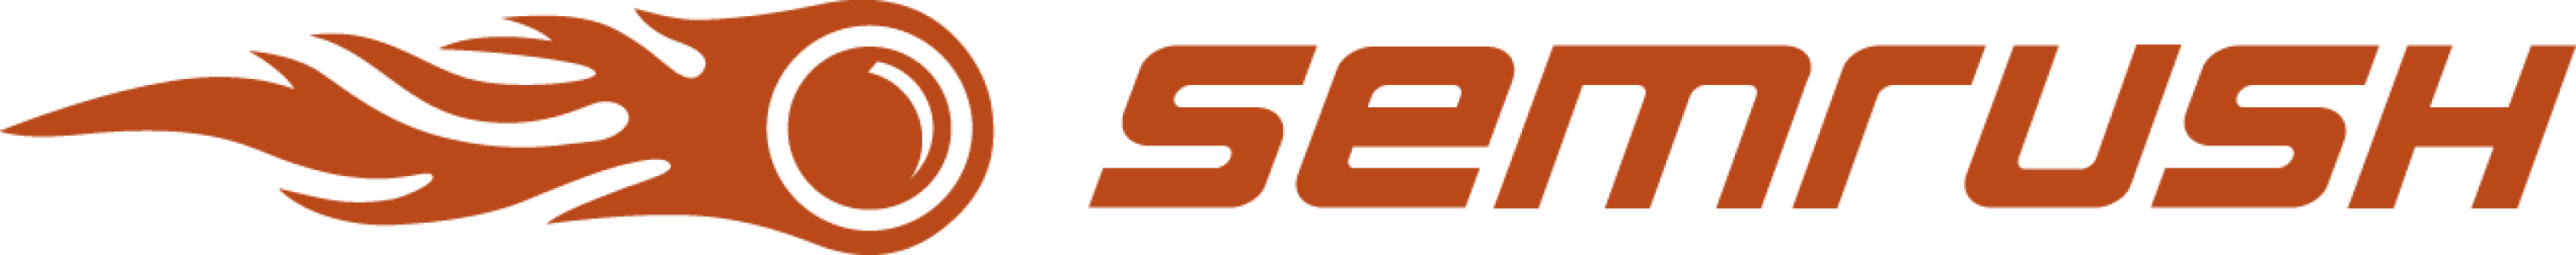 SemRush Logo